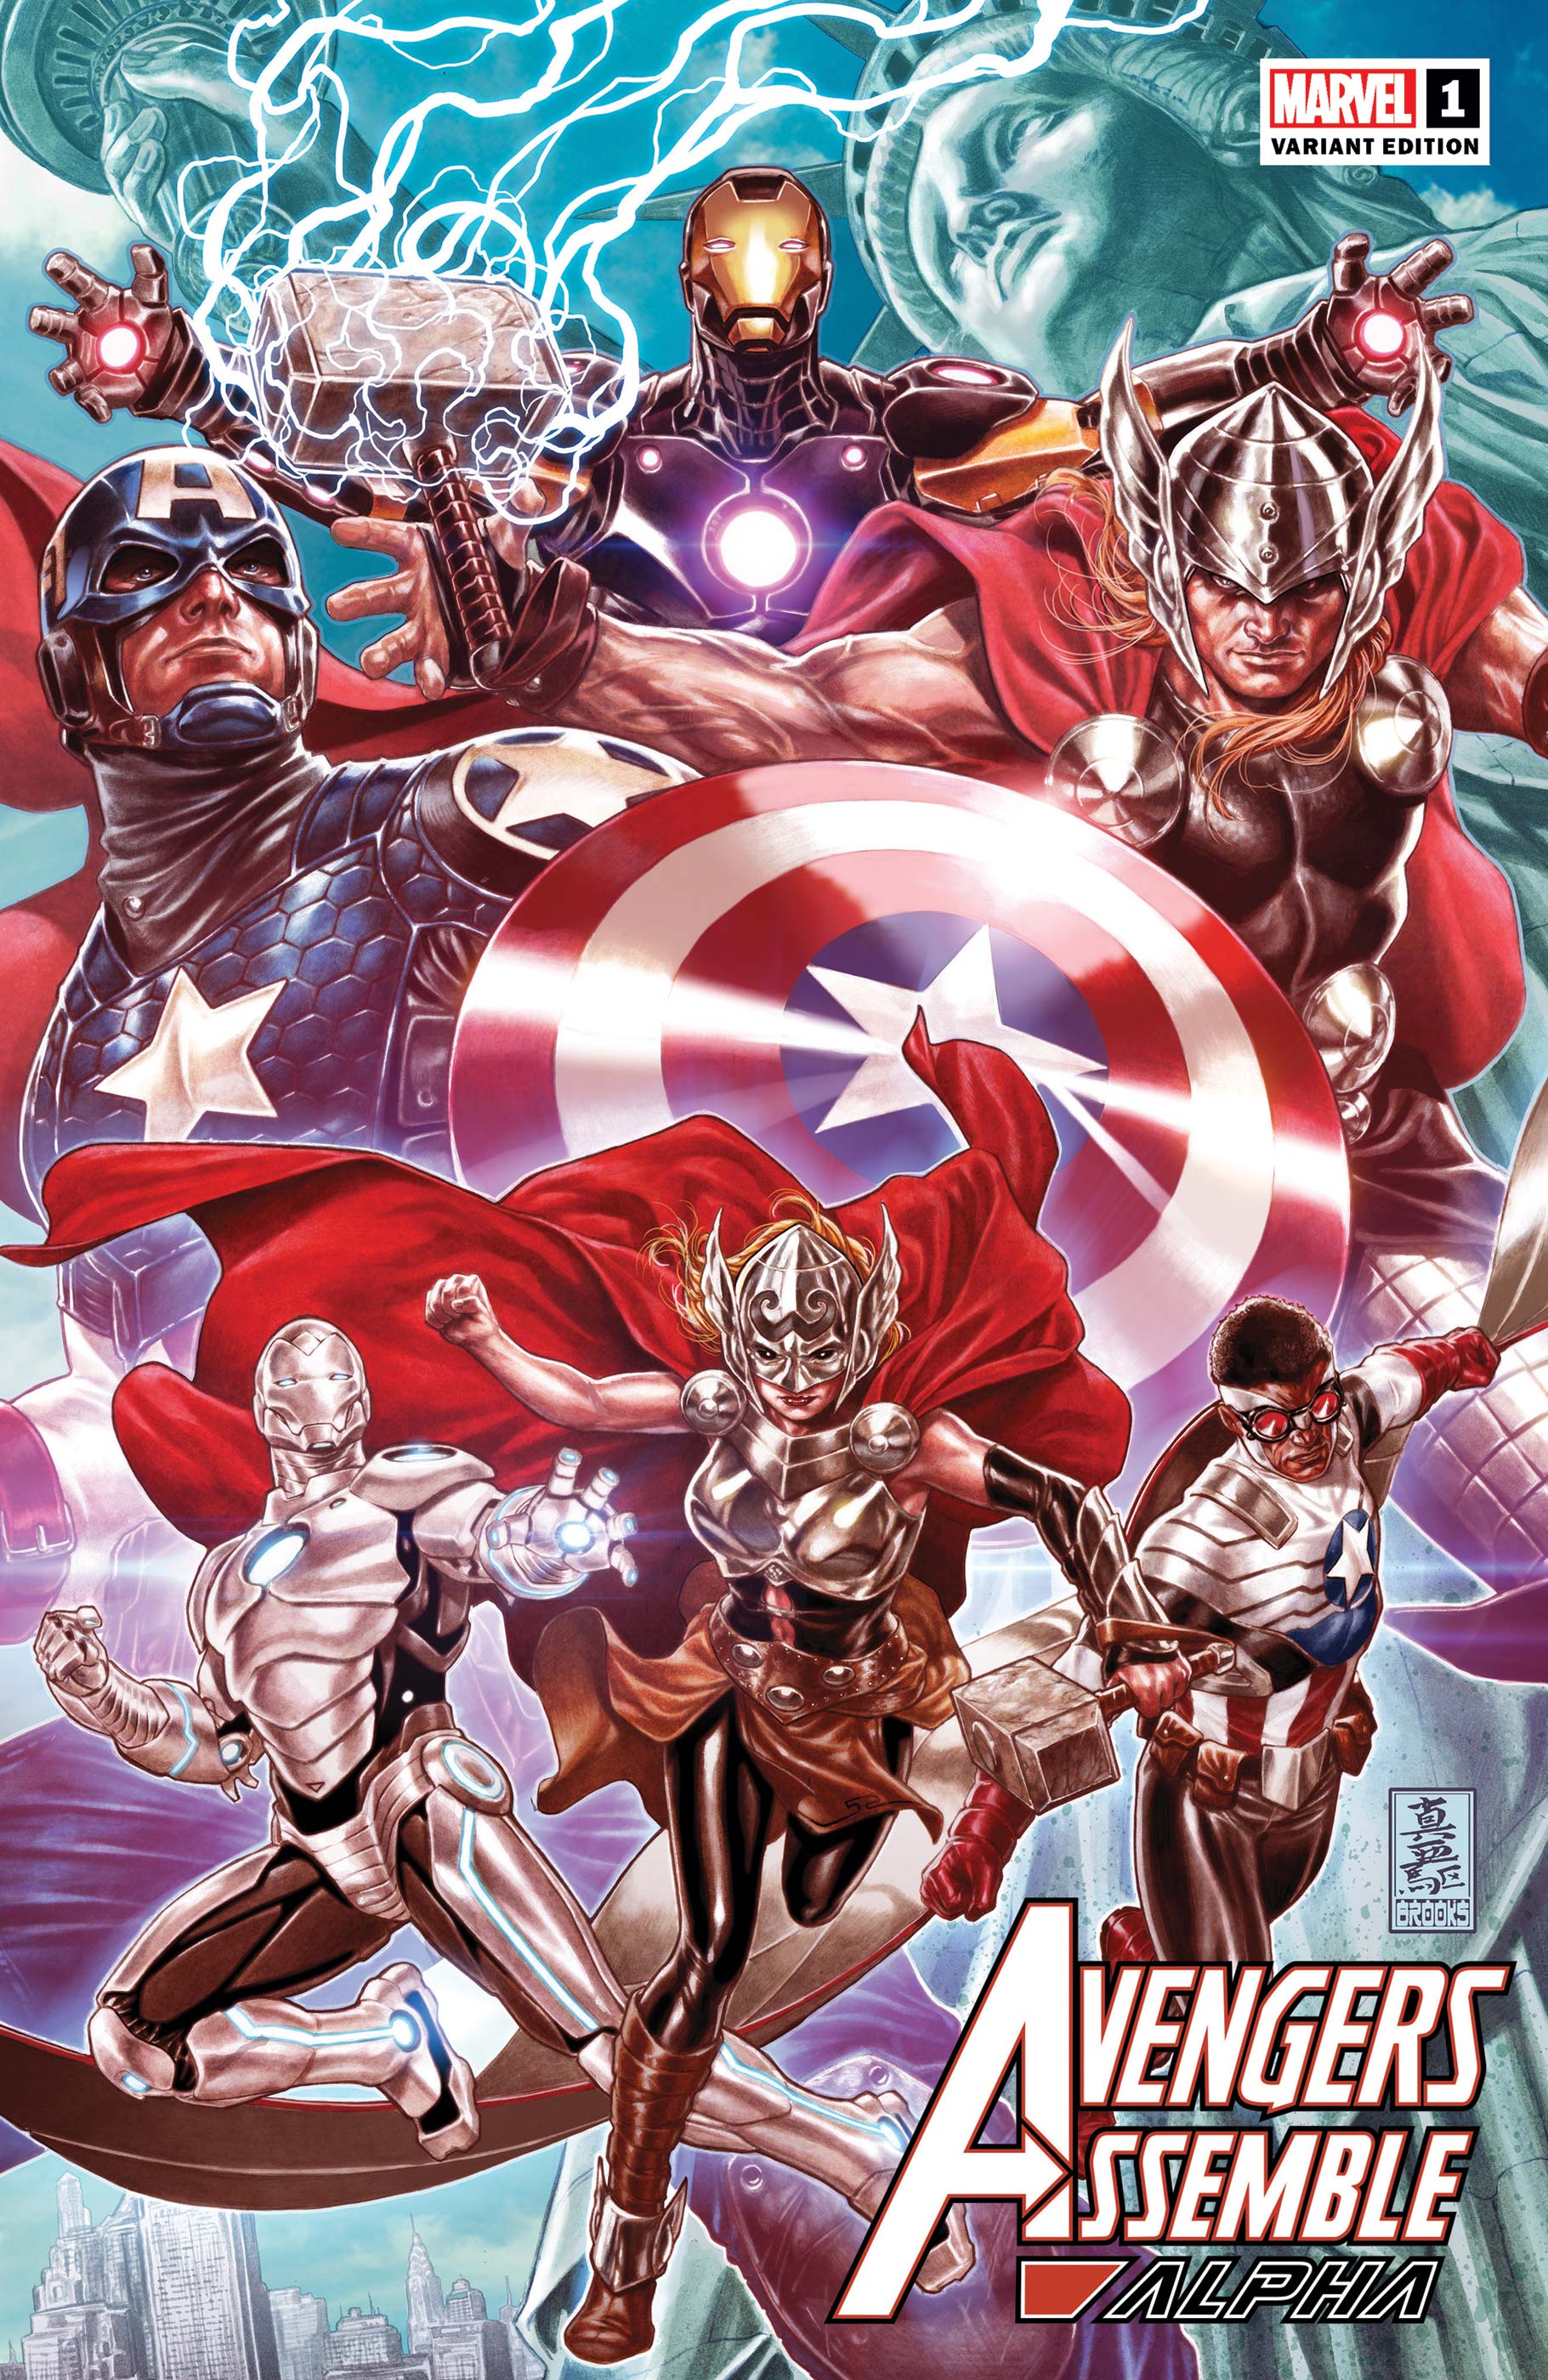 Avengers Assemble Alpha #1 J. Scott Campbell